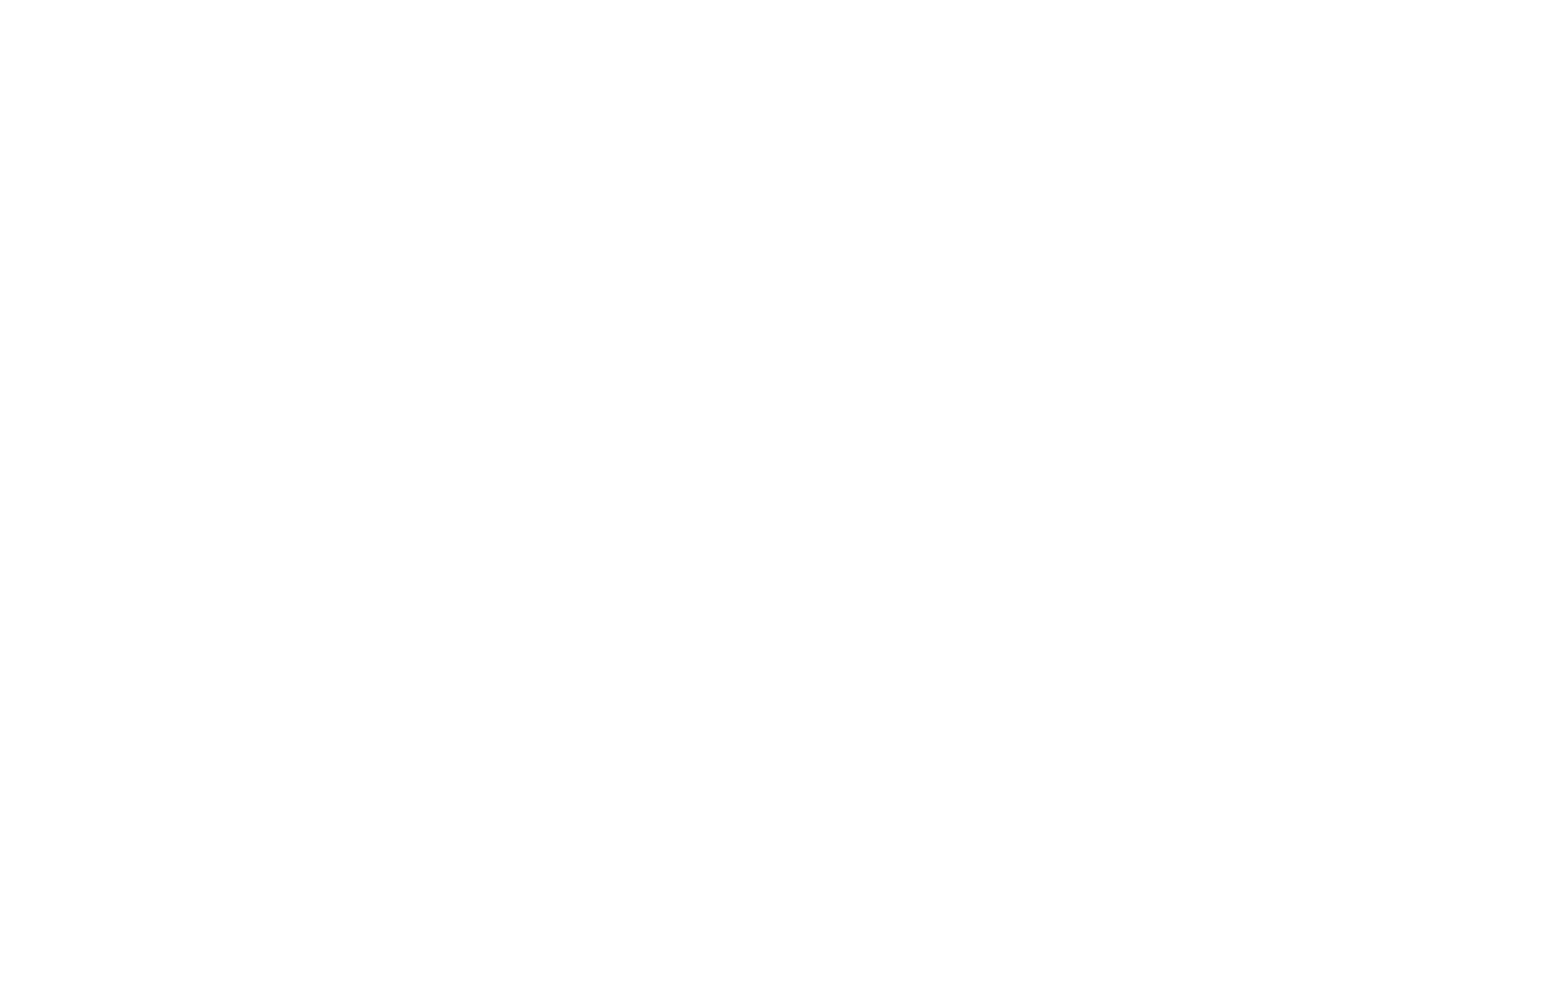 Vend‑Rite Manufacturing